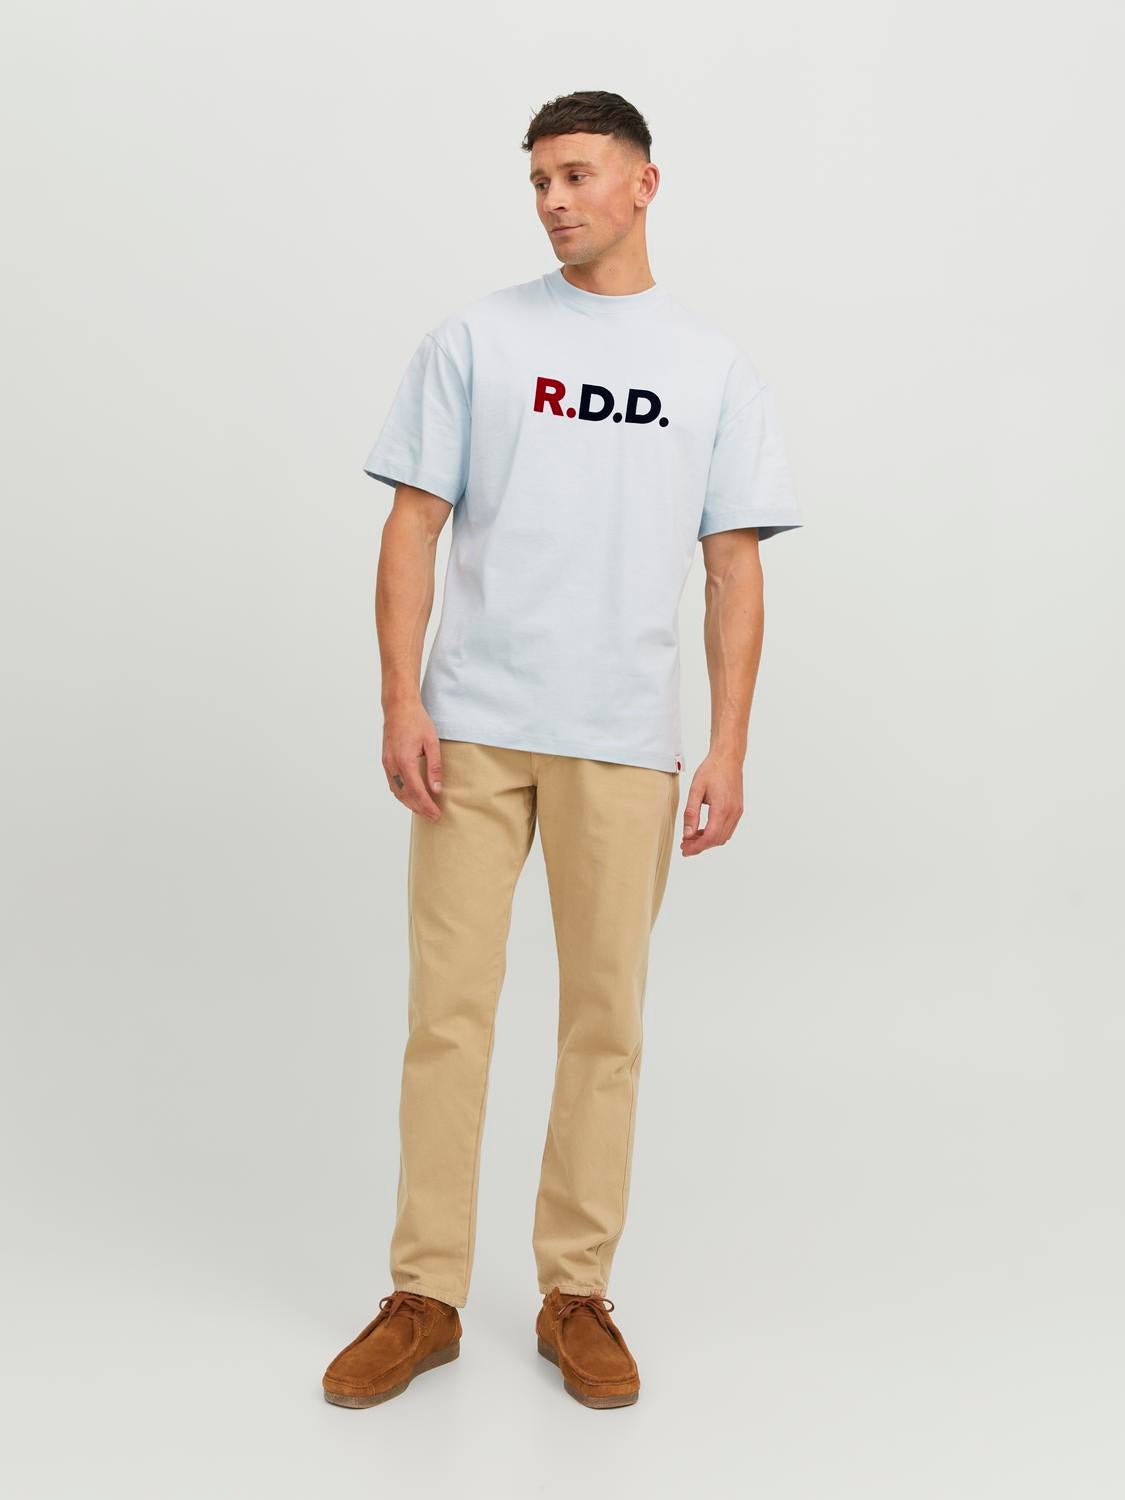 RDD Logo Kruhový výstřih Tričko